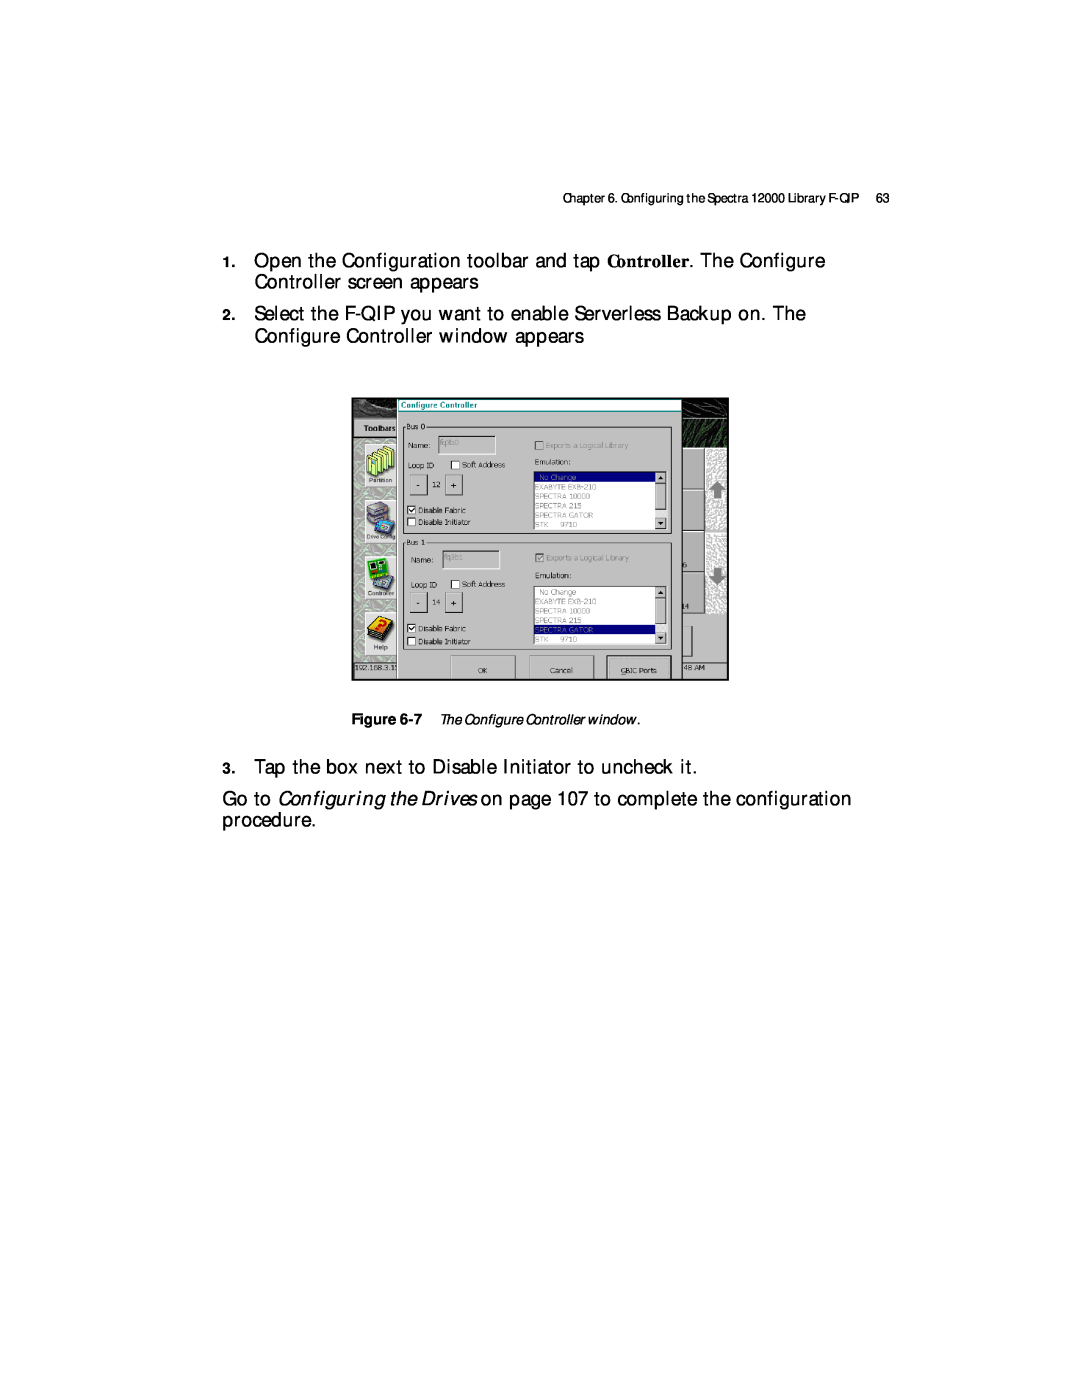 Spectra Logic Spectra 12000 manual 7 The Configure Controller window 